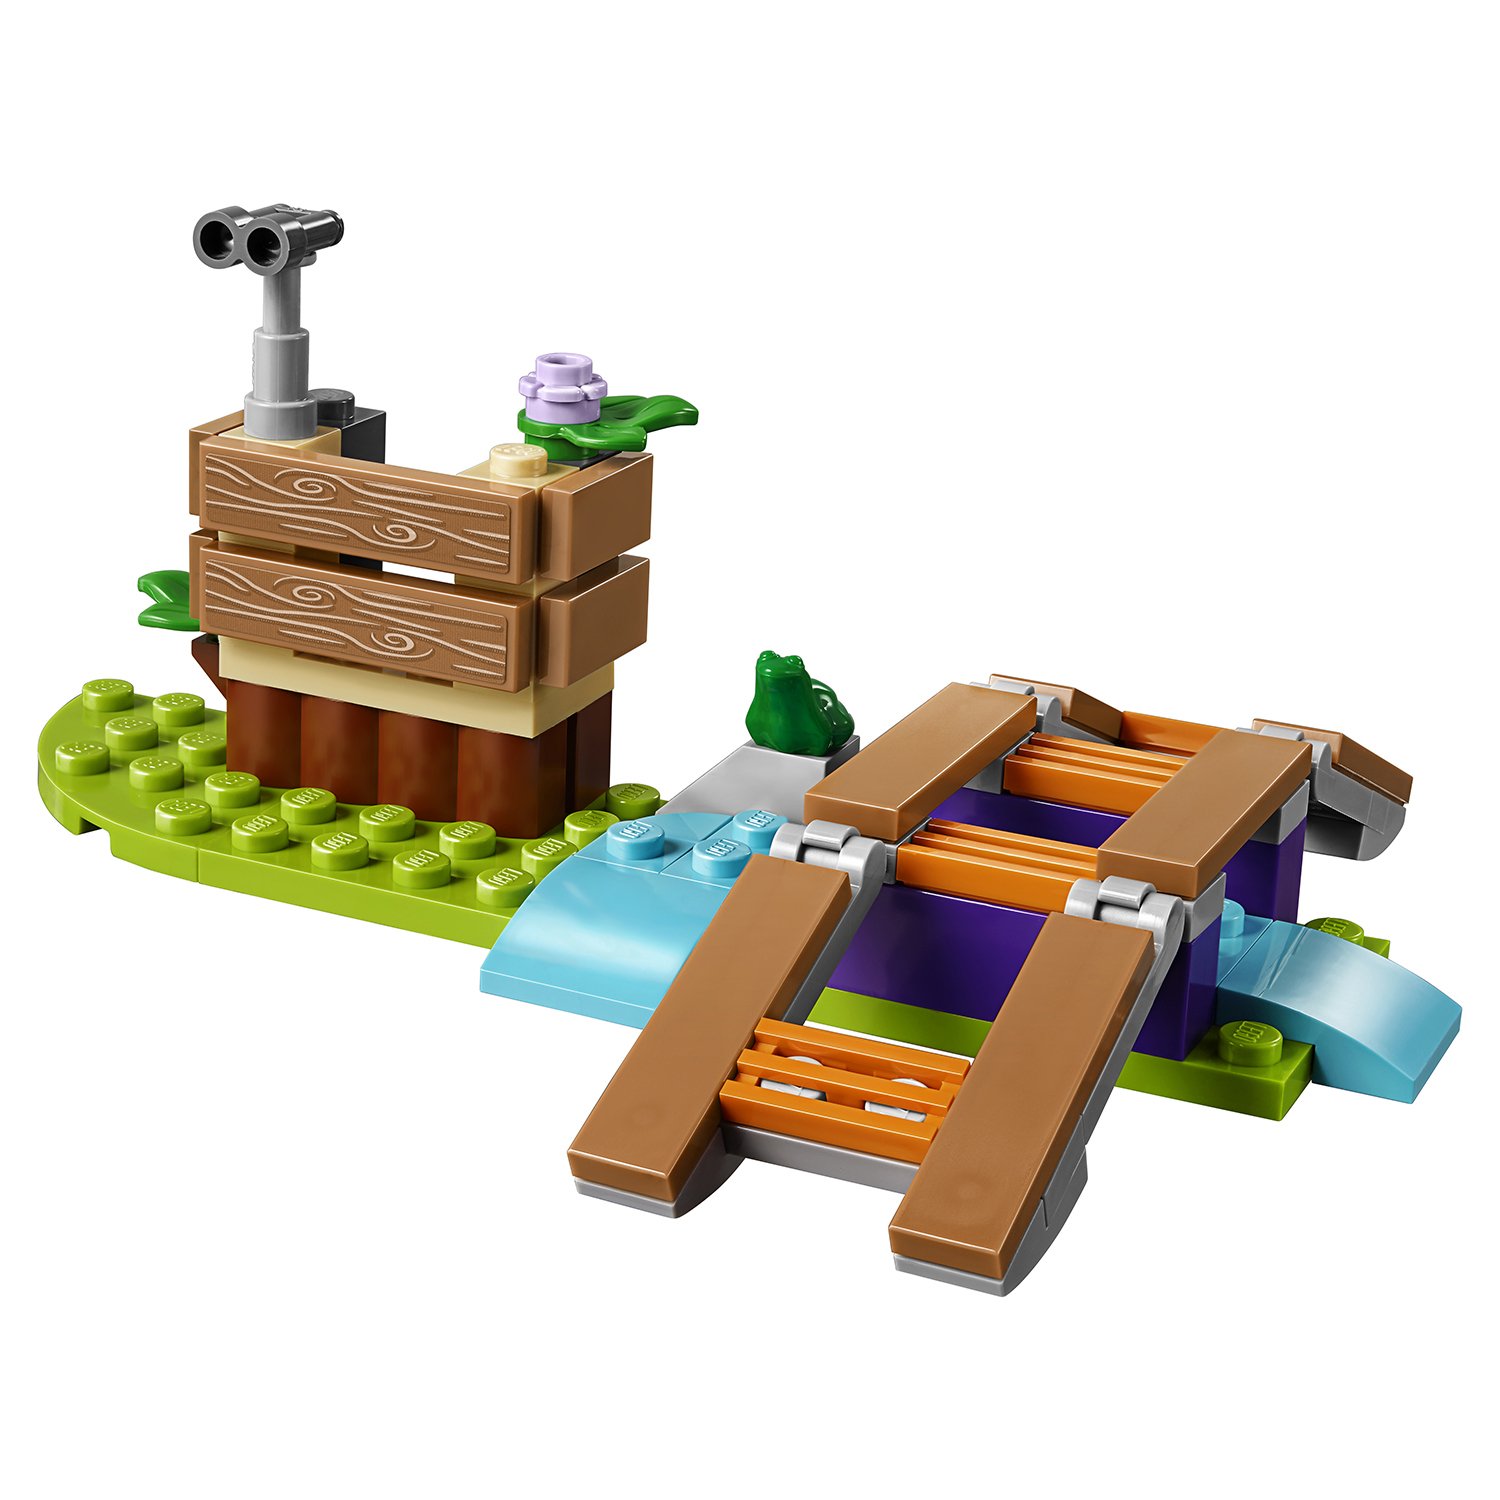 Конструктор LEGO Friends 41363 Лесные приключения Мии